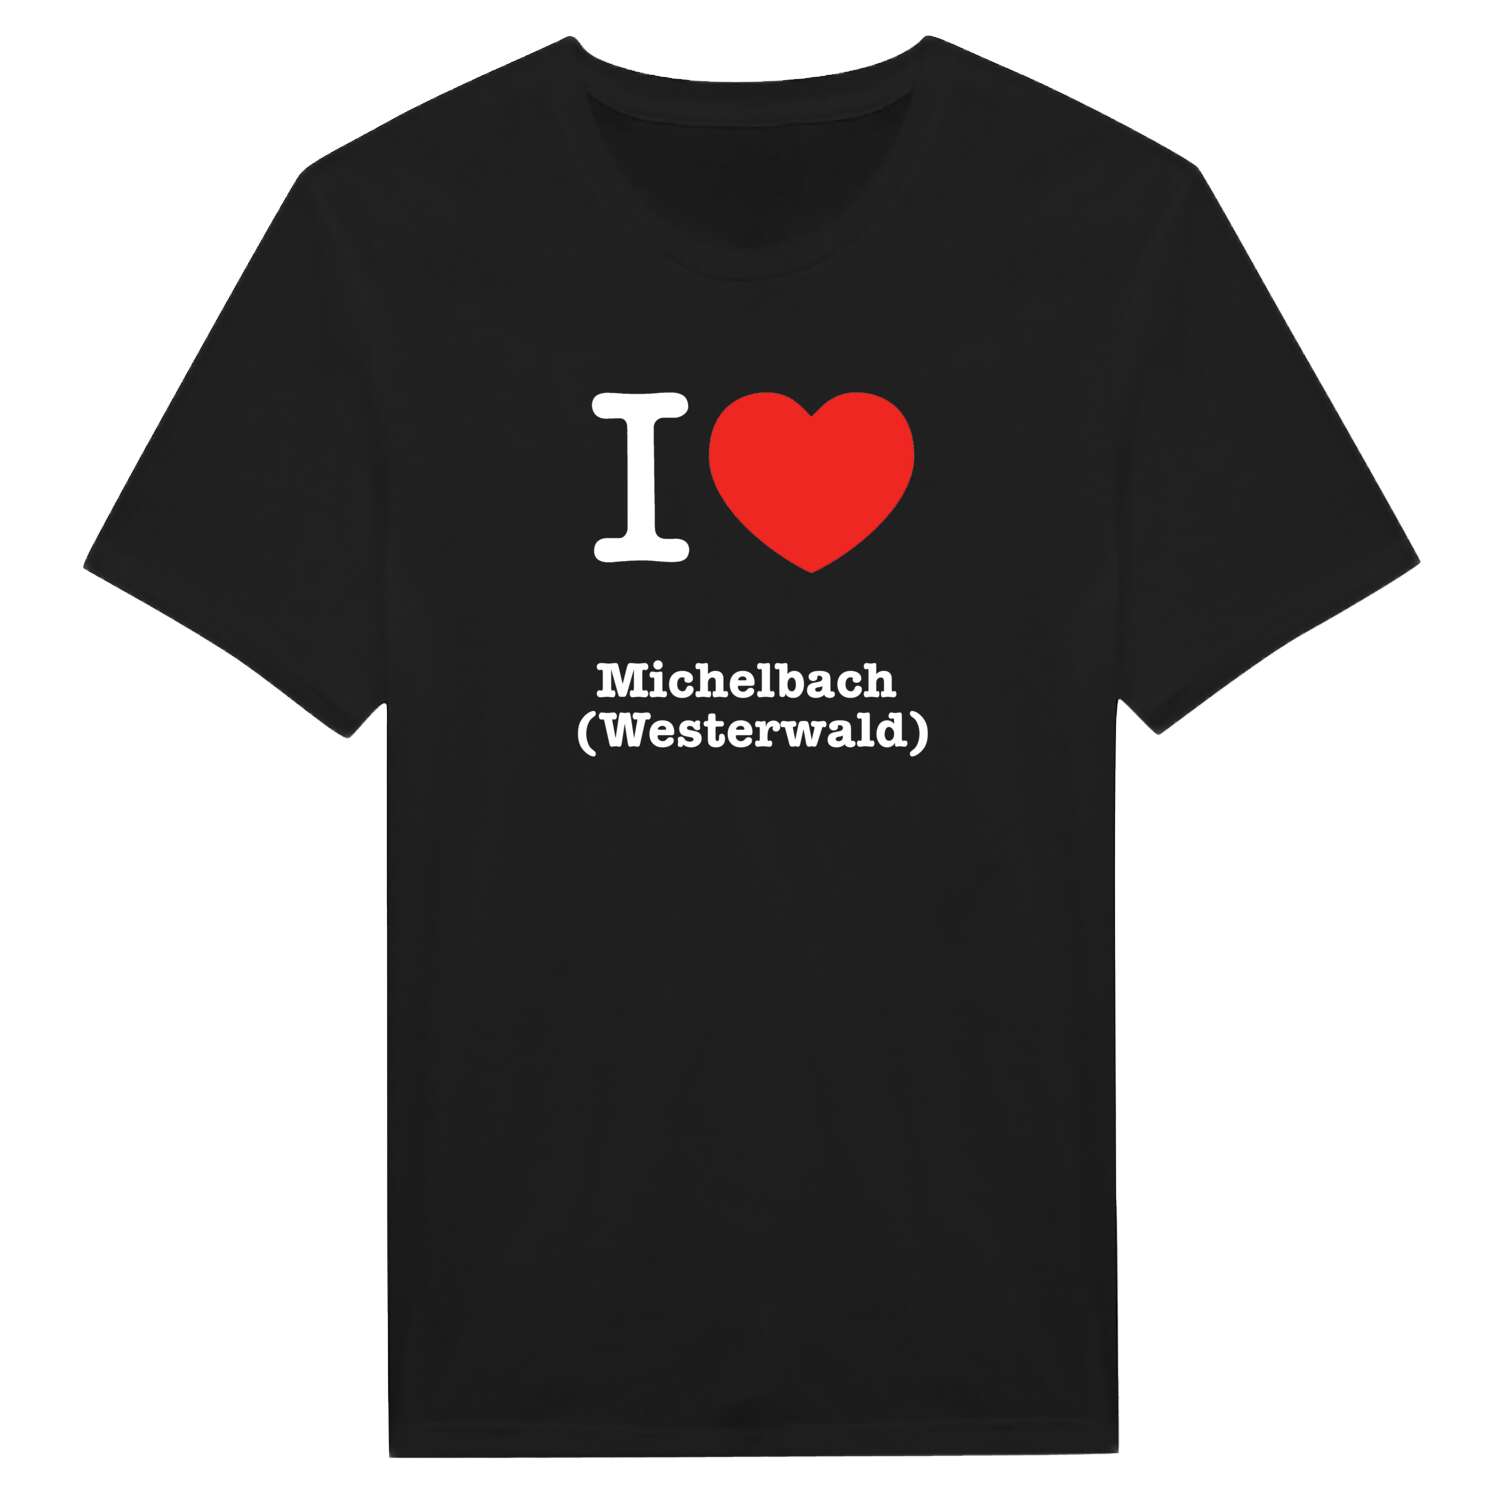 Michelbach (Westerwald) T-Shirt »I love«